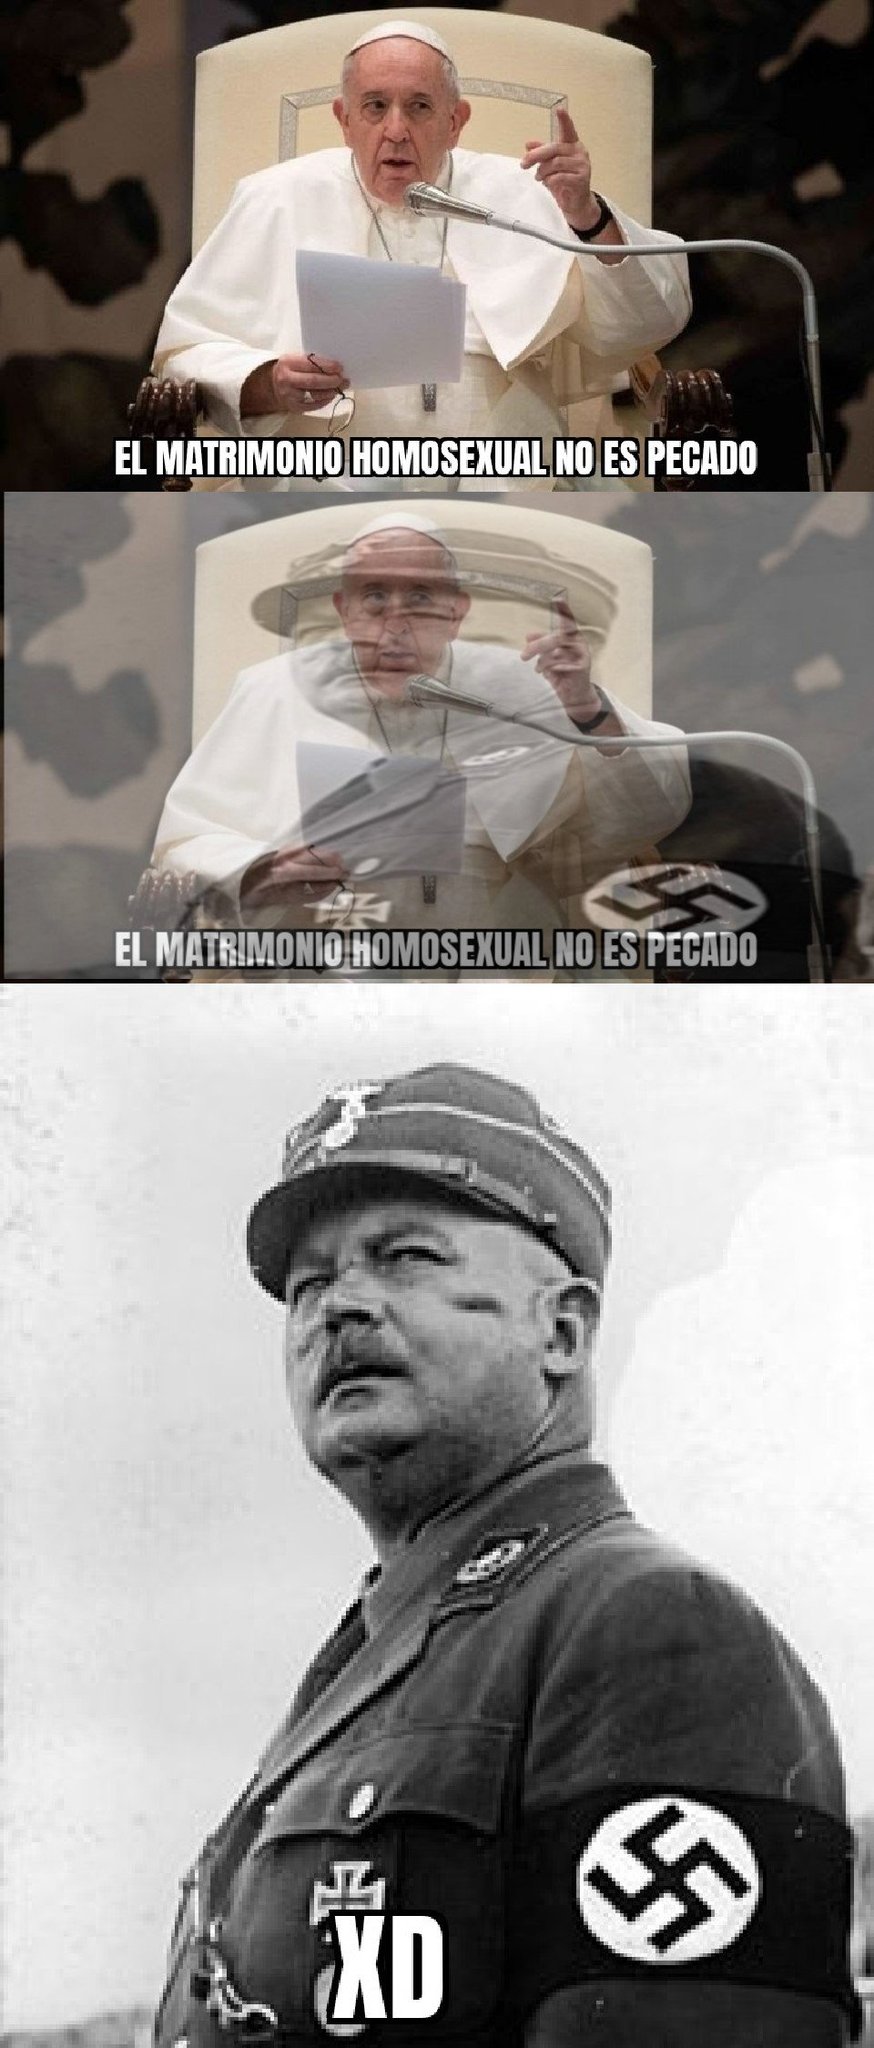 Erns röhm fue ejecutado por orden de Hitler debido a su homosexualidad y el papa terminará igual - meme